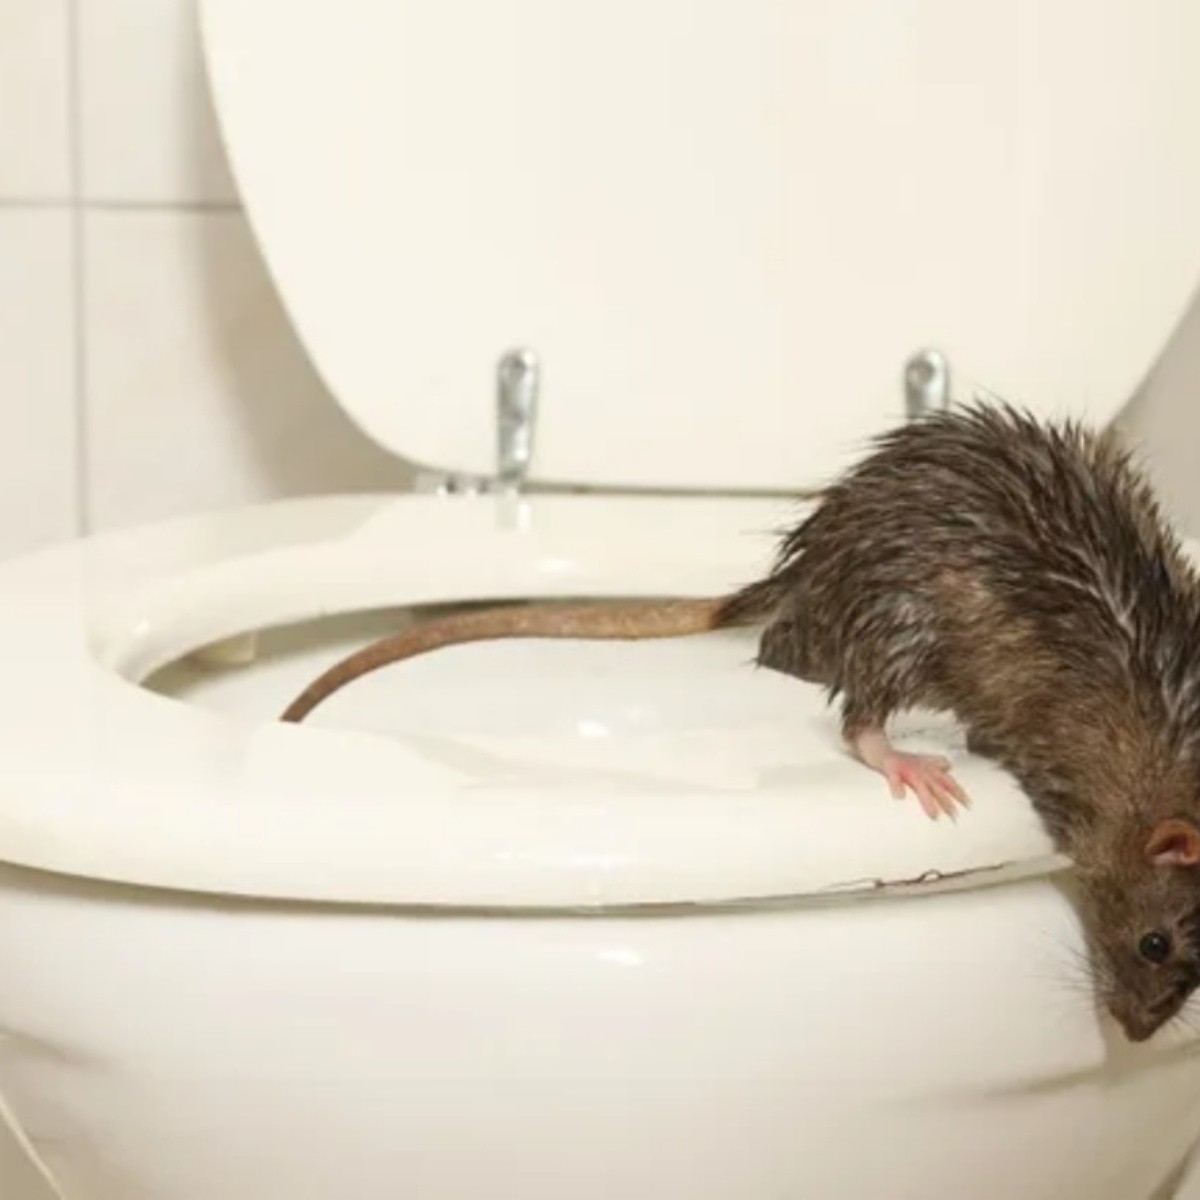 hombre hospitalizado tras ser mordido por una rata en su baño: un caso de leptospirosis